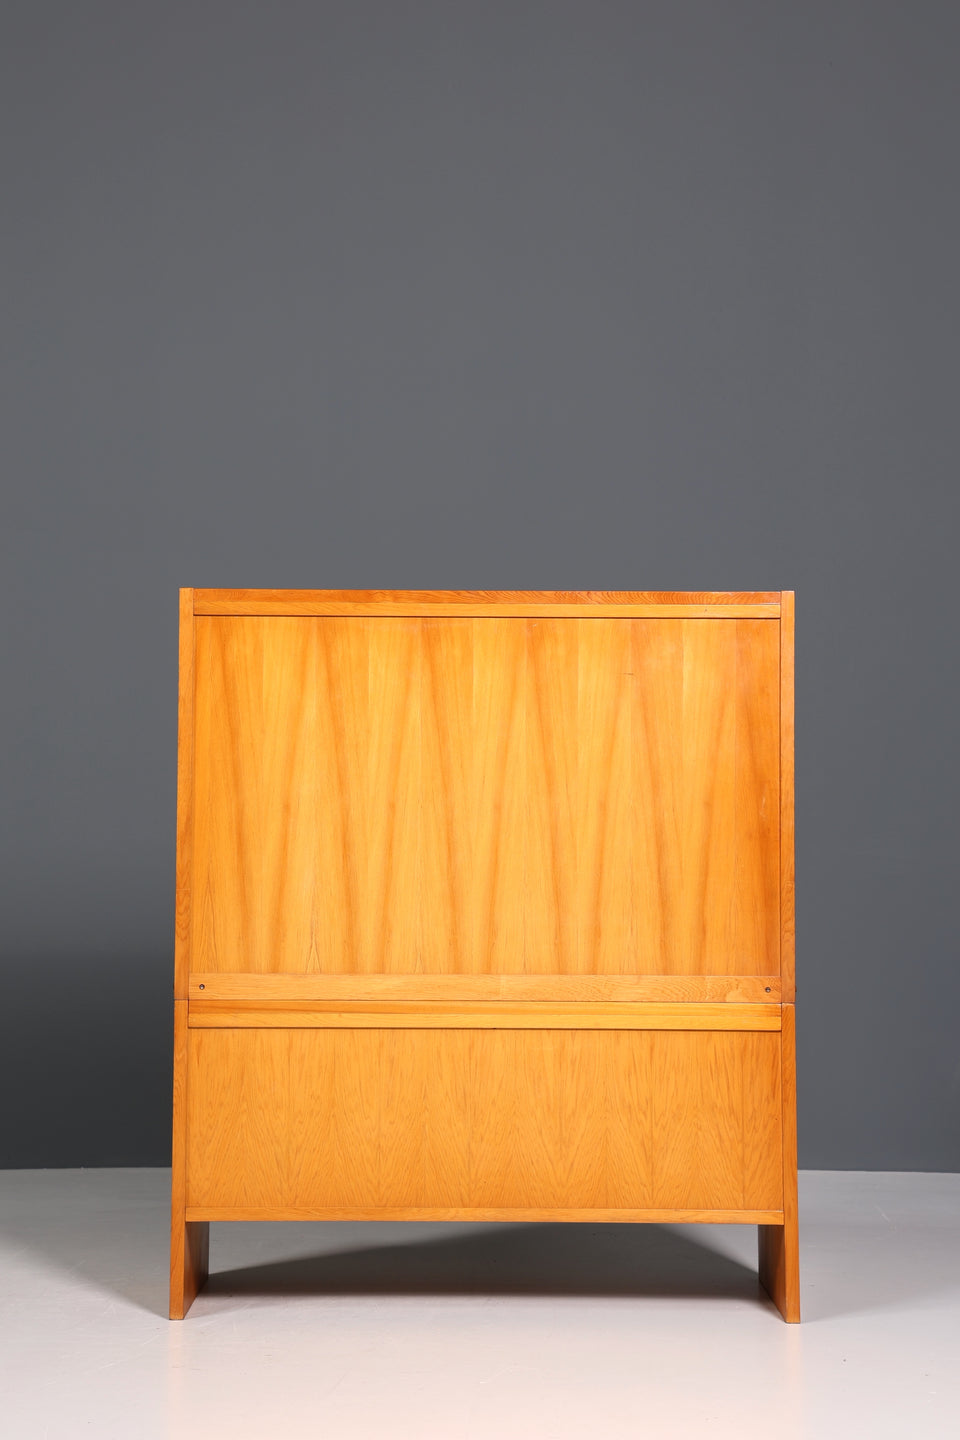 Wunderschönes Mid Century Schrank Vintage Highboard Küchenschrank Regal Retro Vitrine 60er Jahre Kommode